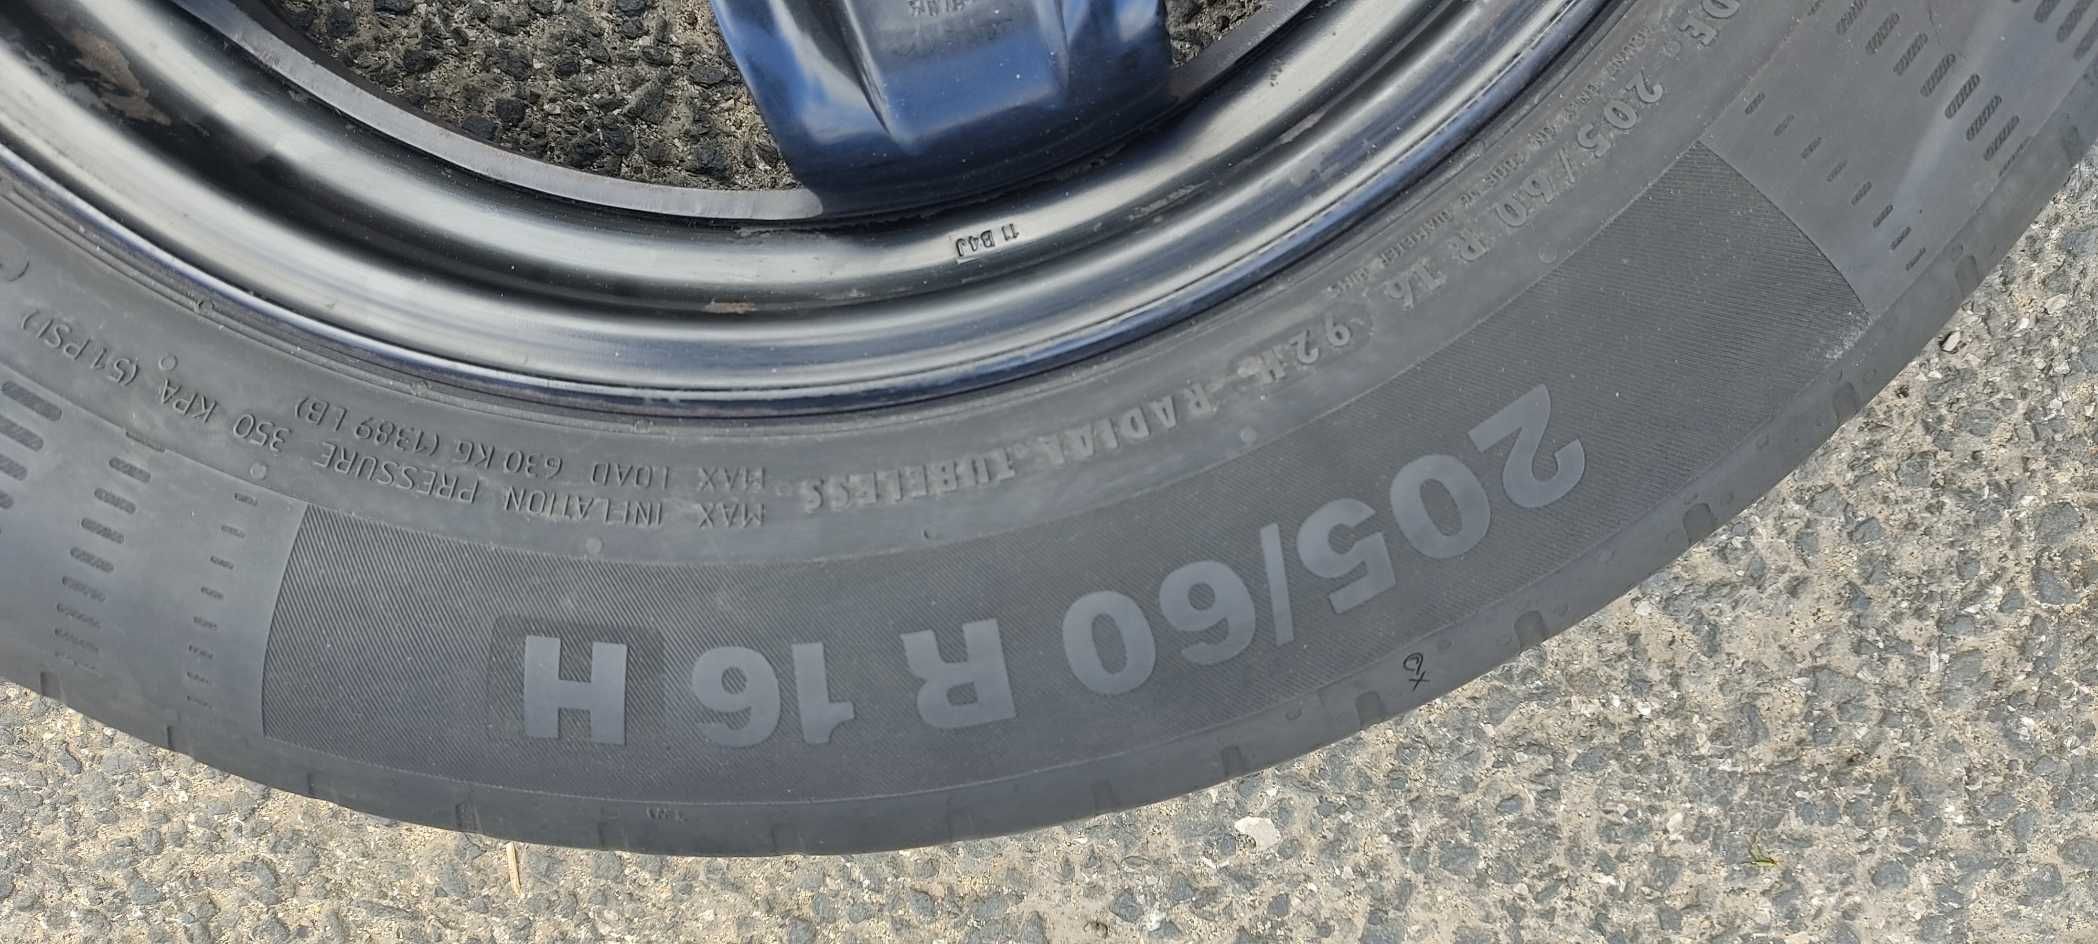 Vende-se pneu usado em boas condições 205/60 R16 5x114.3